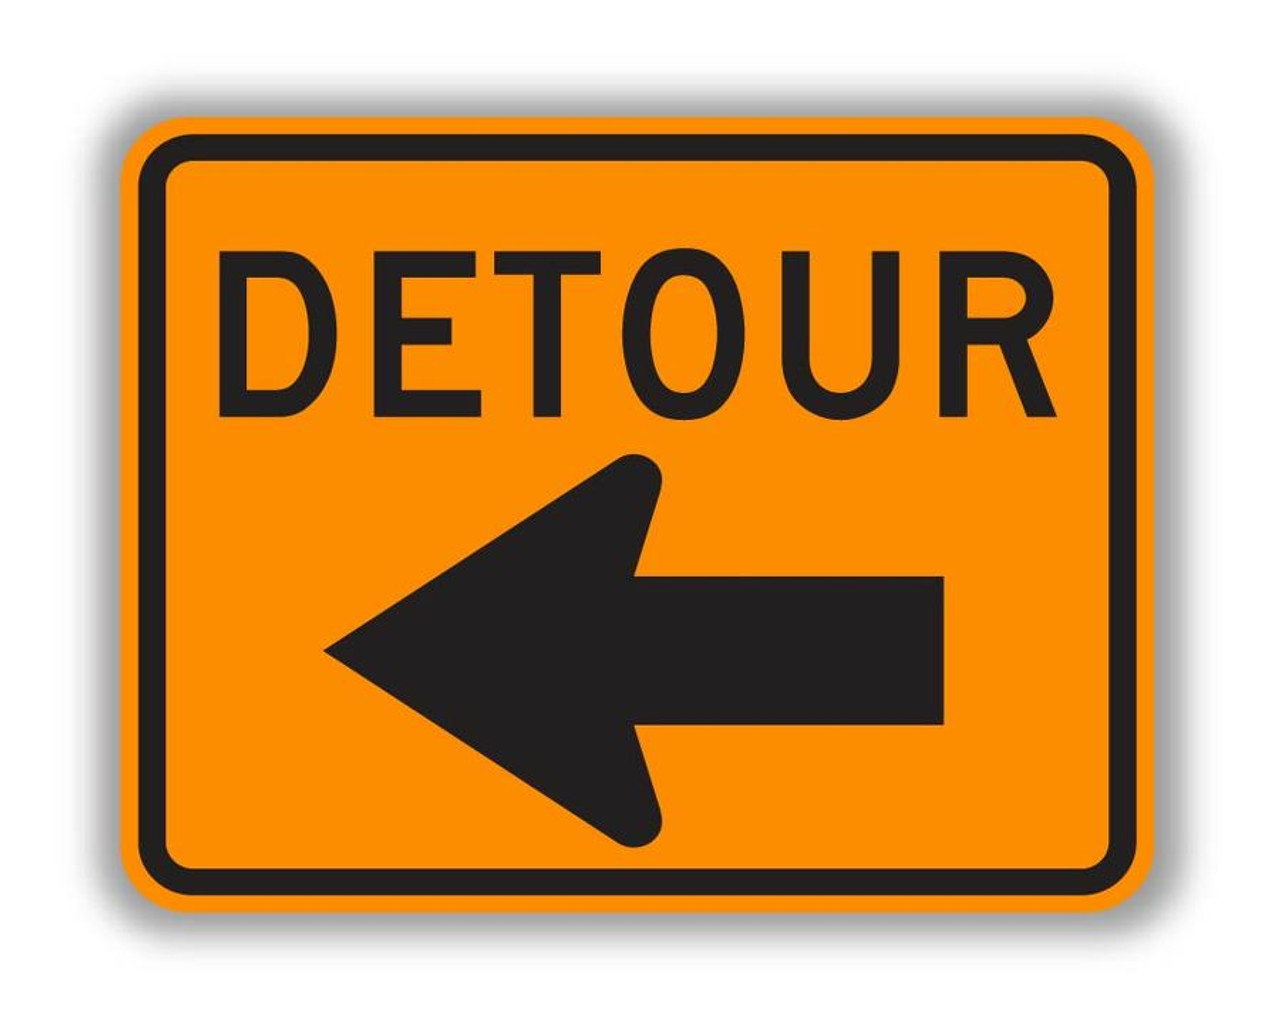 road construction signs detour